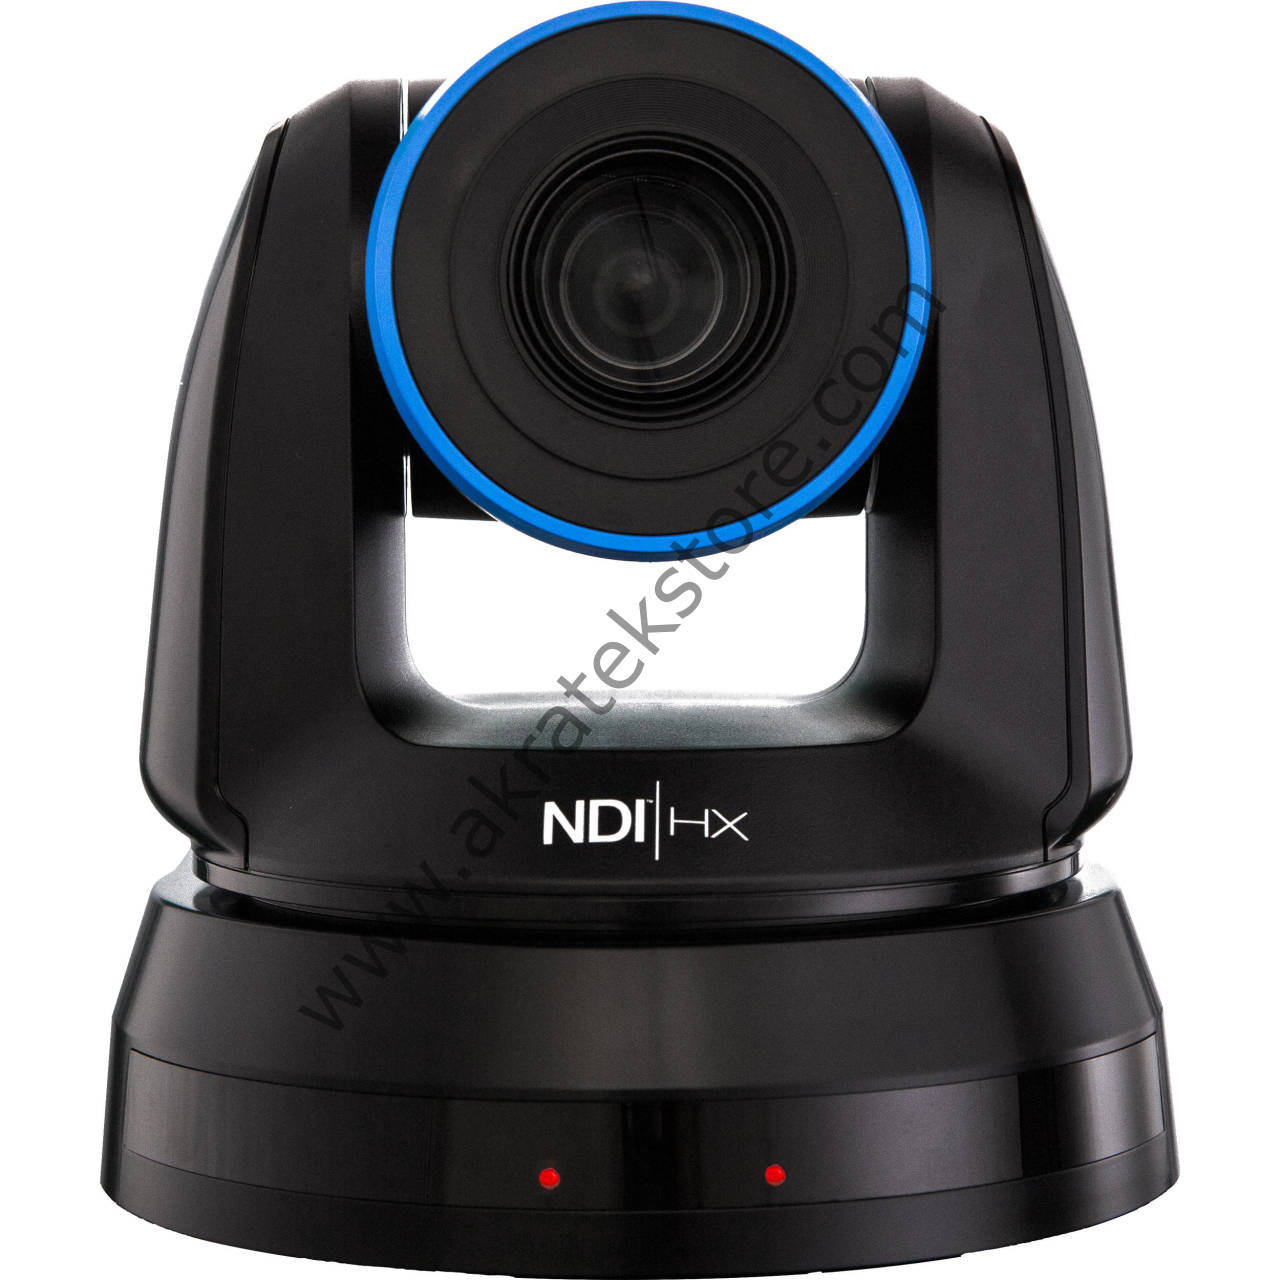 Newtek NDI camera